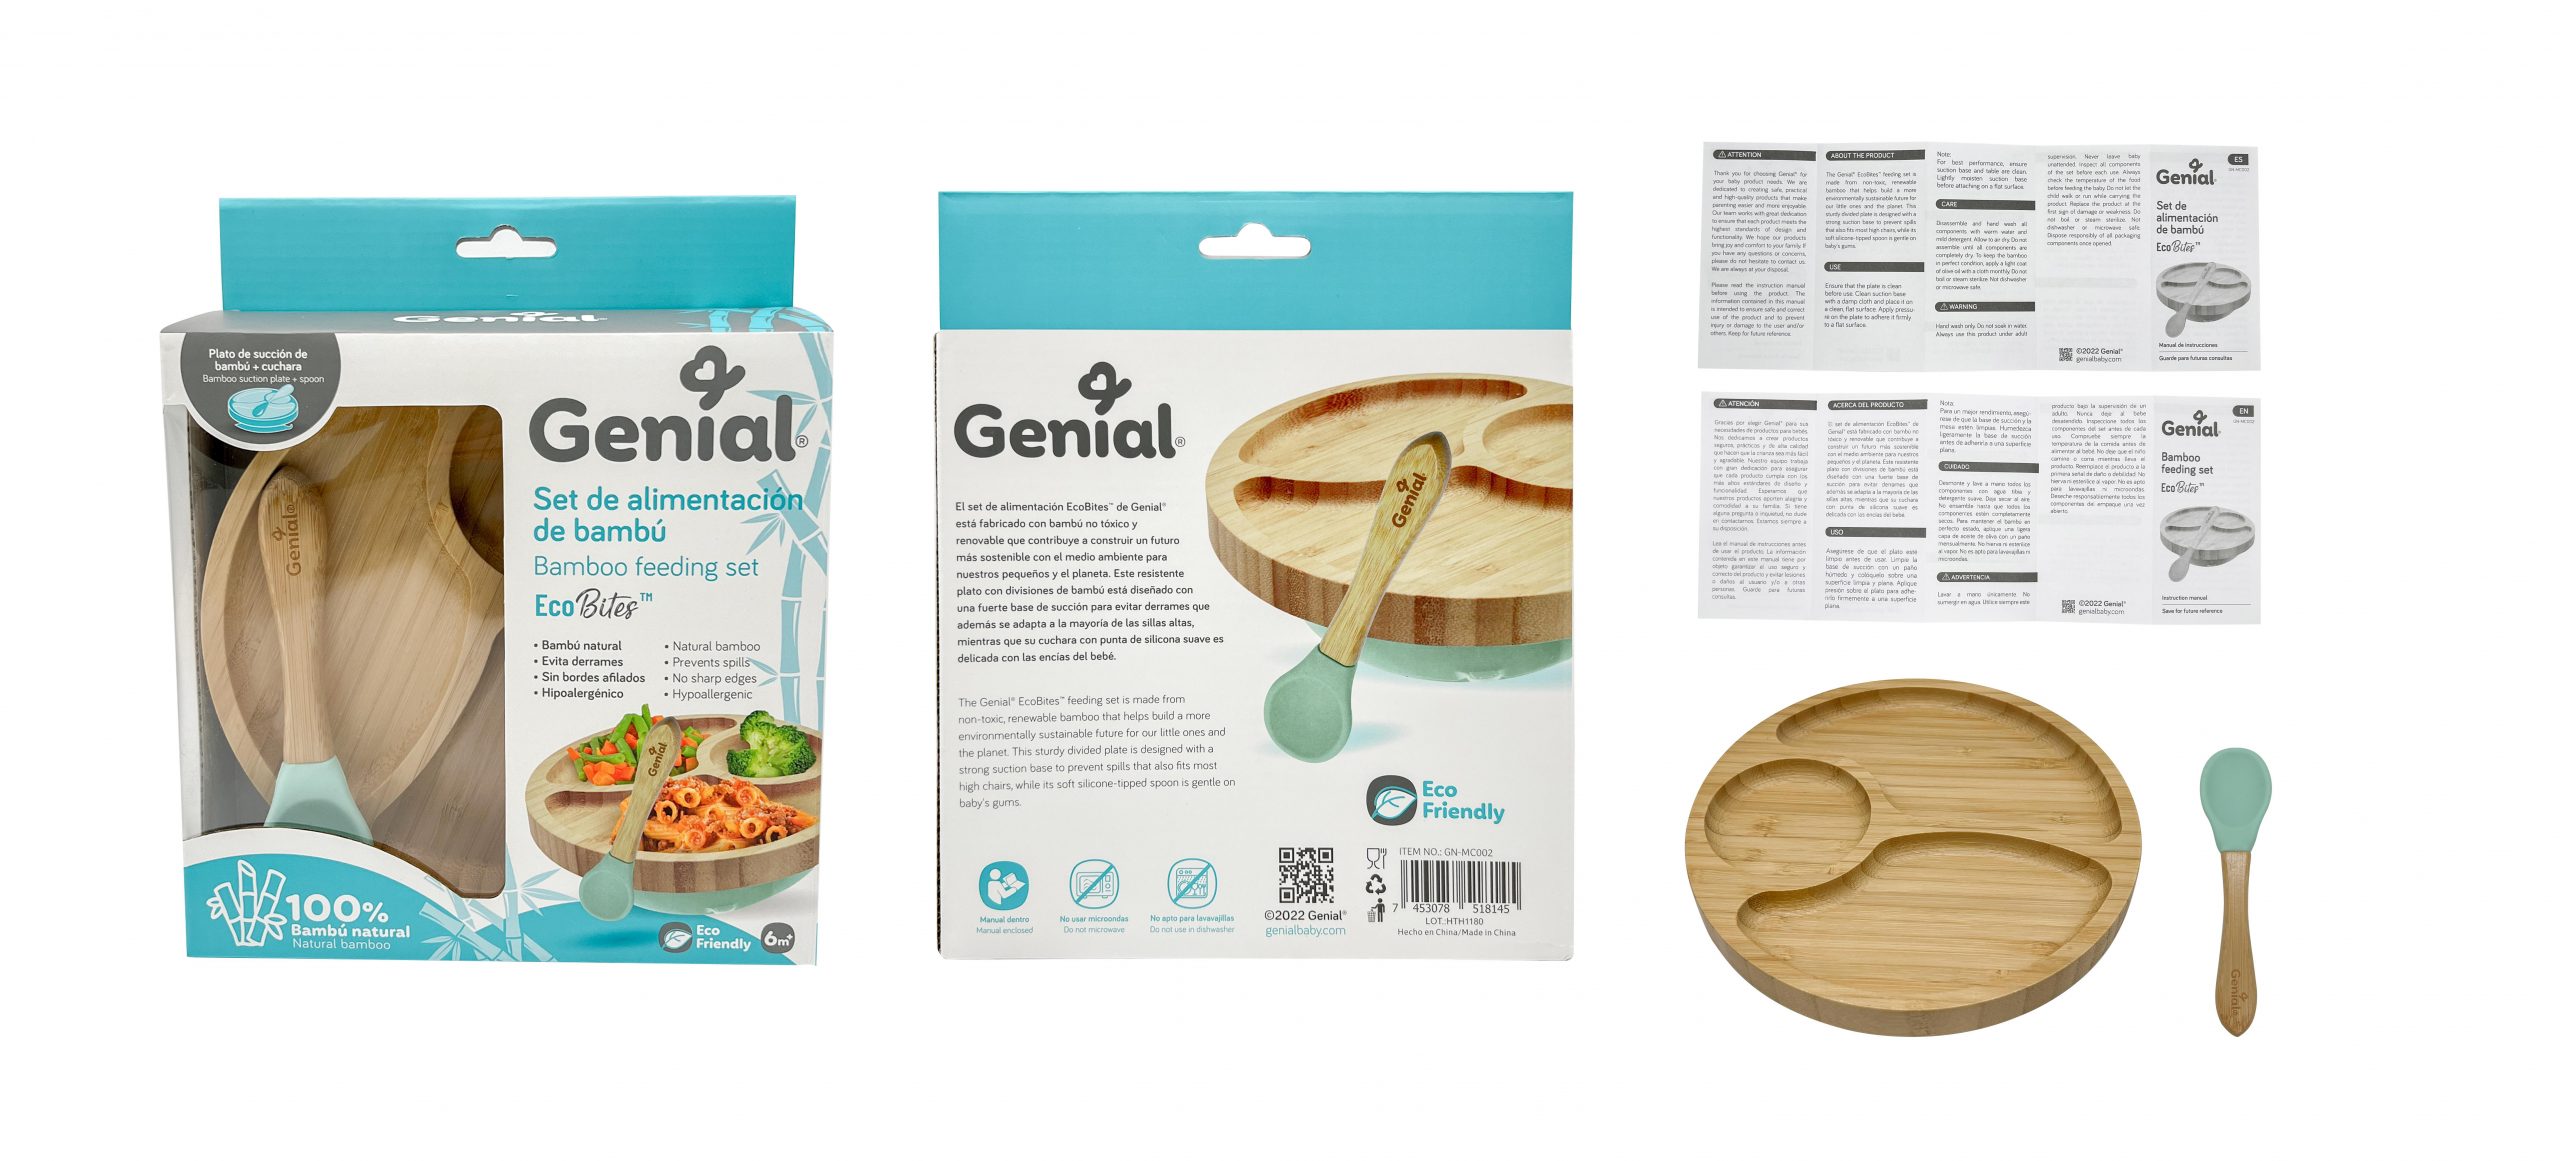 Genial – Set de alimentación de bambu plato plano